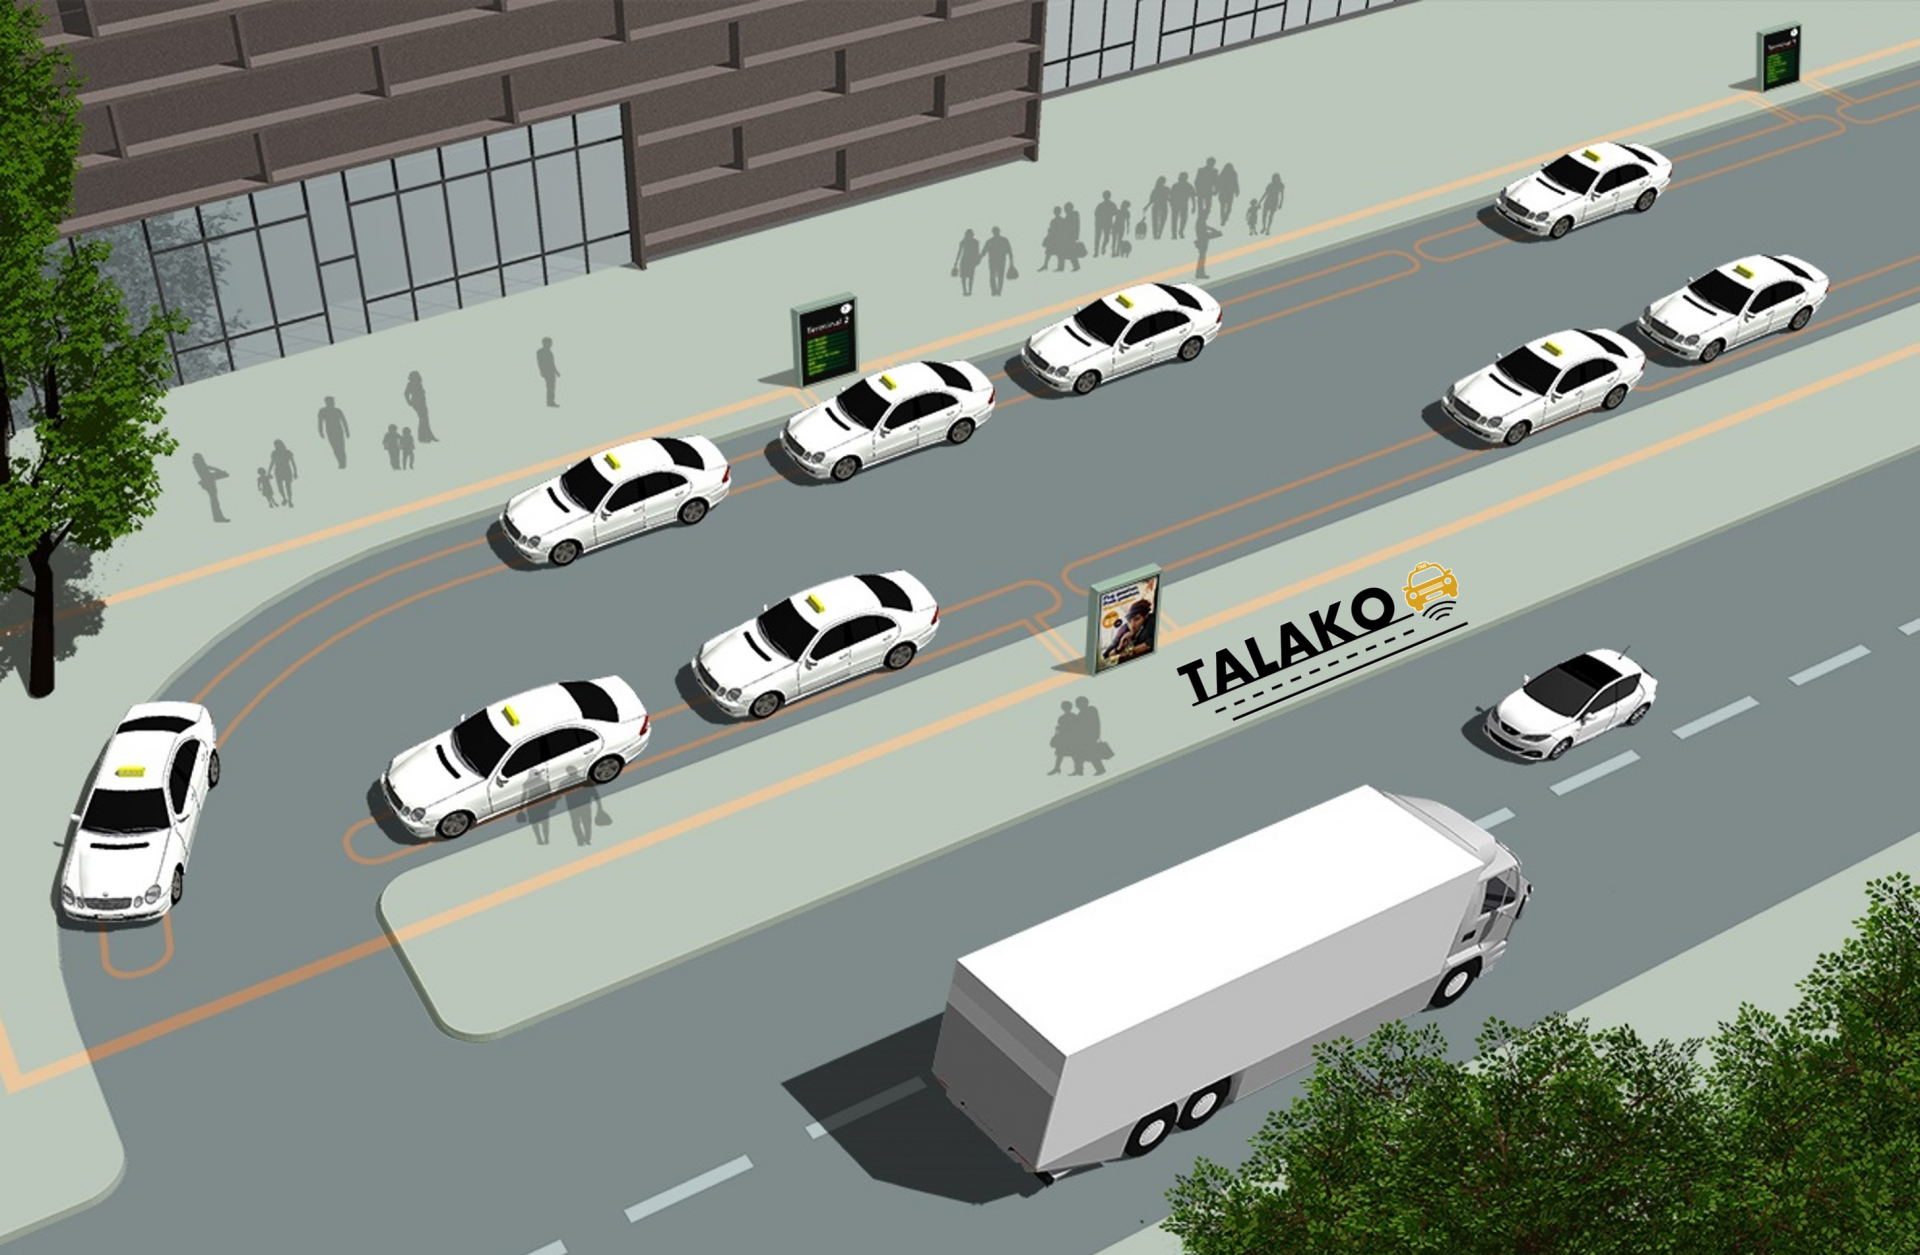 TALAKO - Taxiladekonzept für Elektrotaxis im öffentlichen Raum